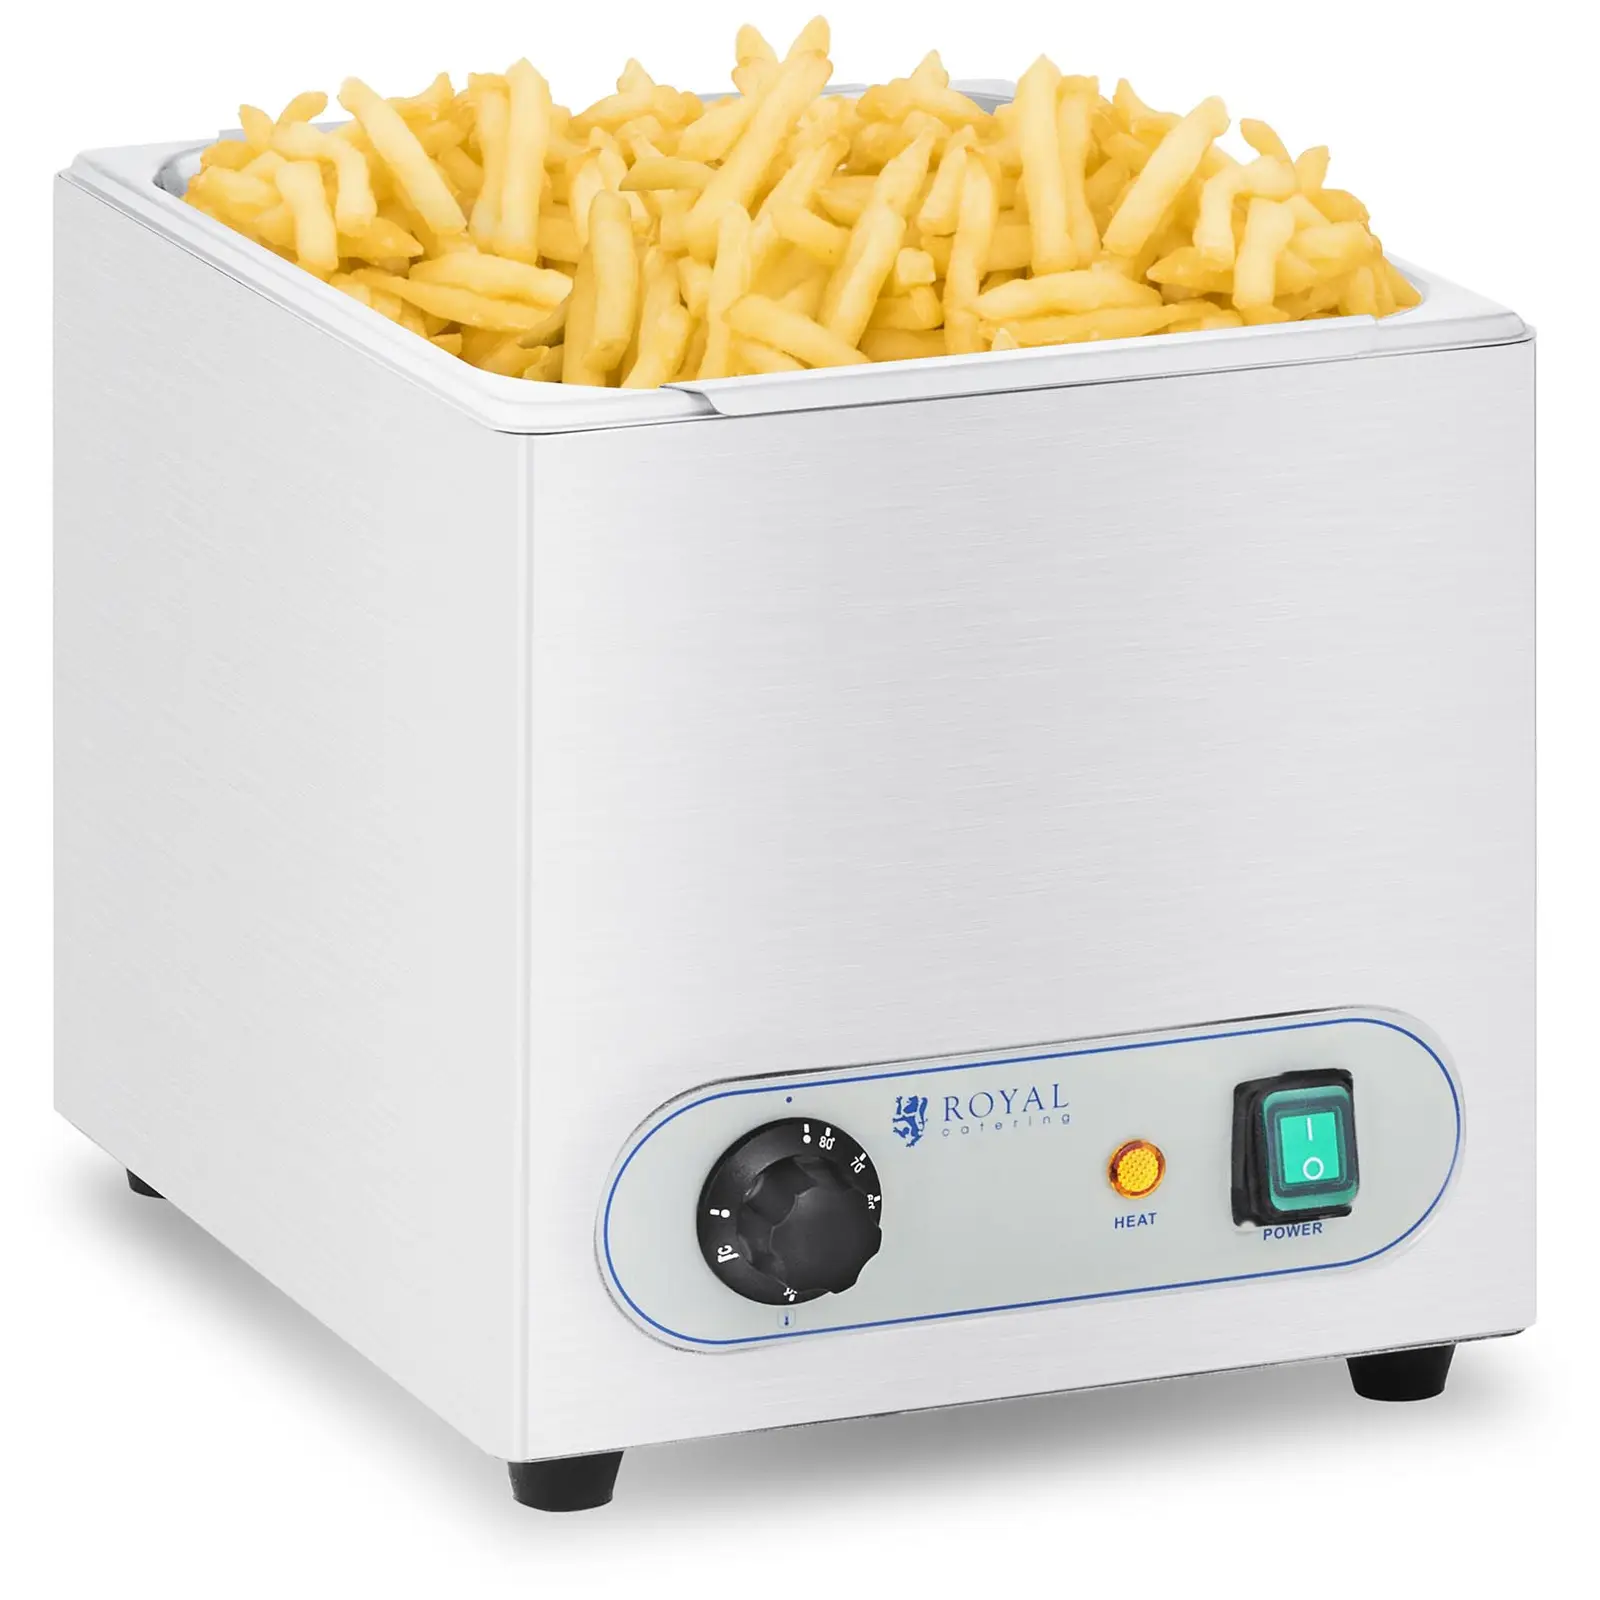 Θερμαντήρας για τηγανητές πατάτες - 350 W